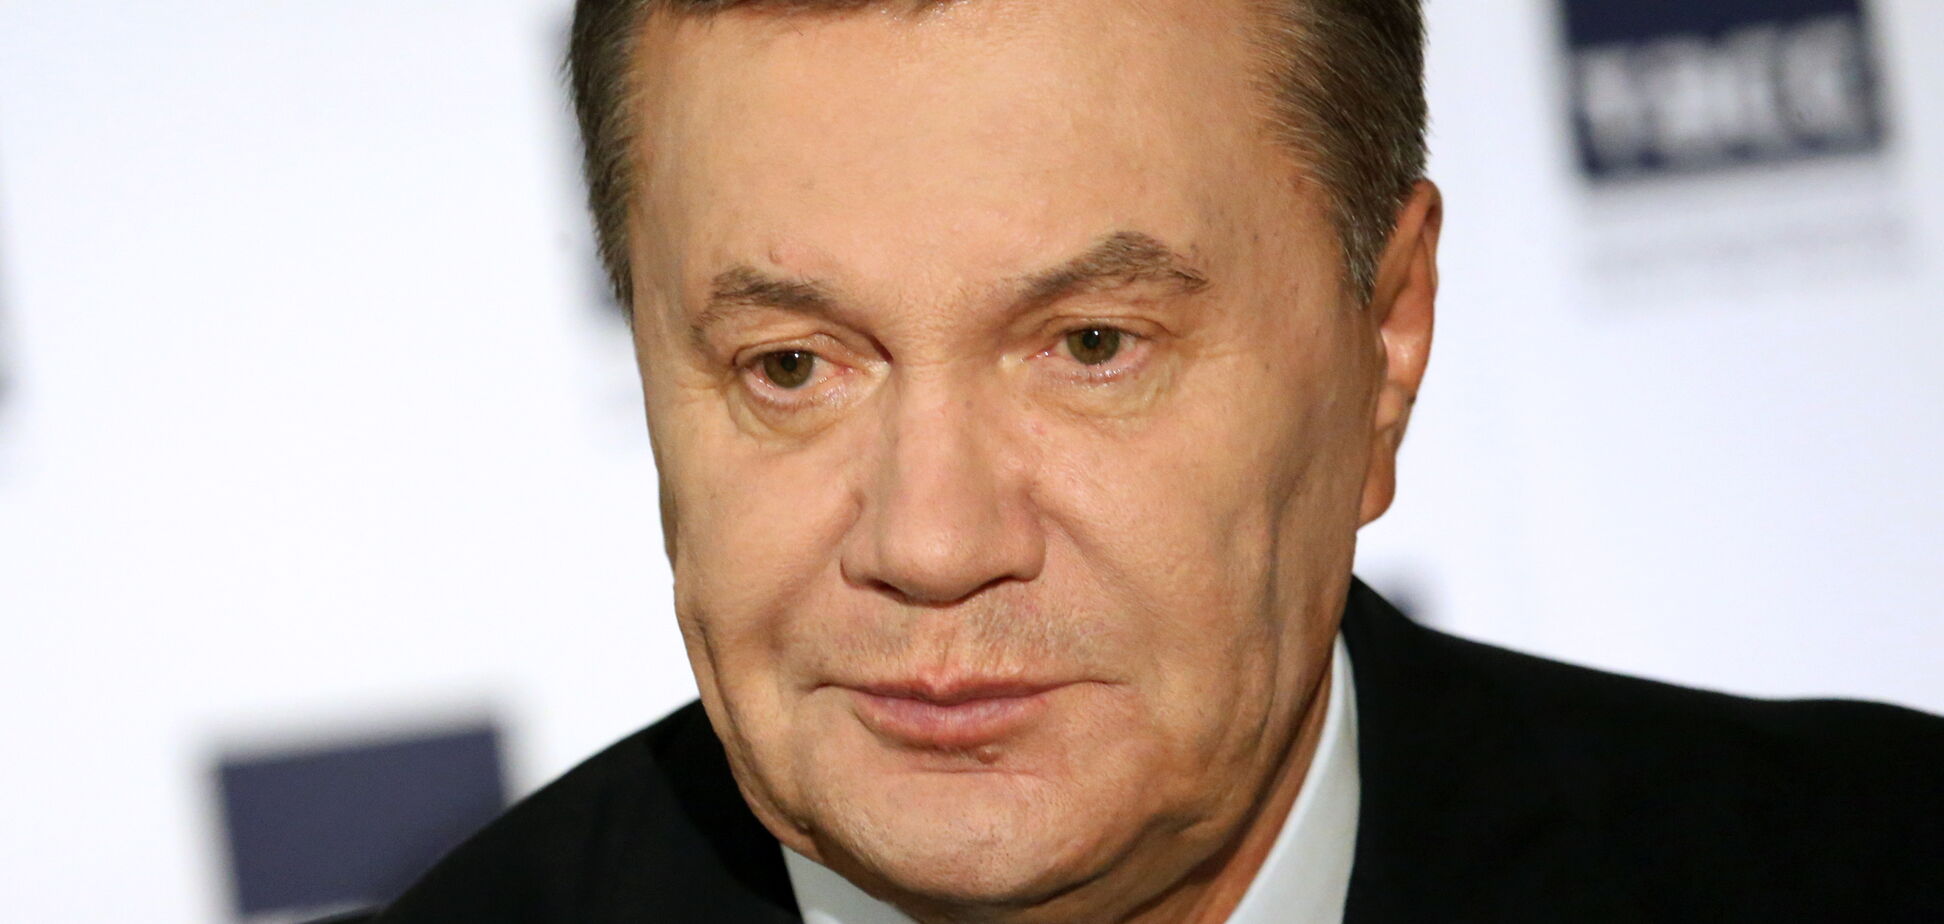 В России у беглого Януковича родился ребенок: стали известны подробности